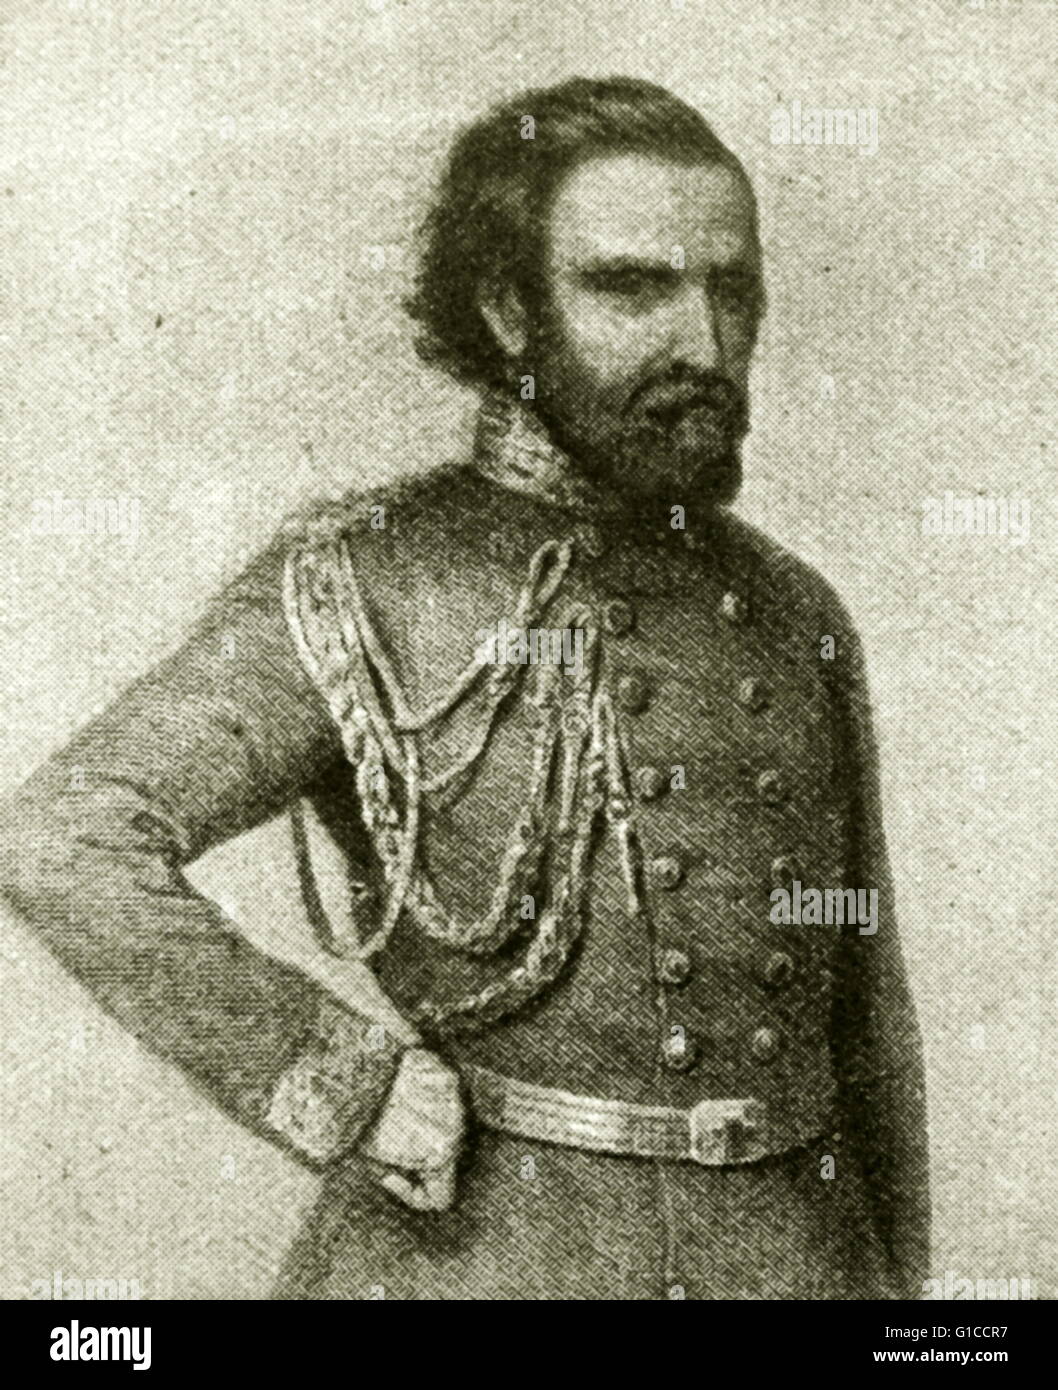 Portrait de Giuseppe Garibaldi (1807-1882) Général et homme politique italien Banque D'Images